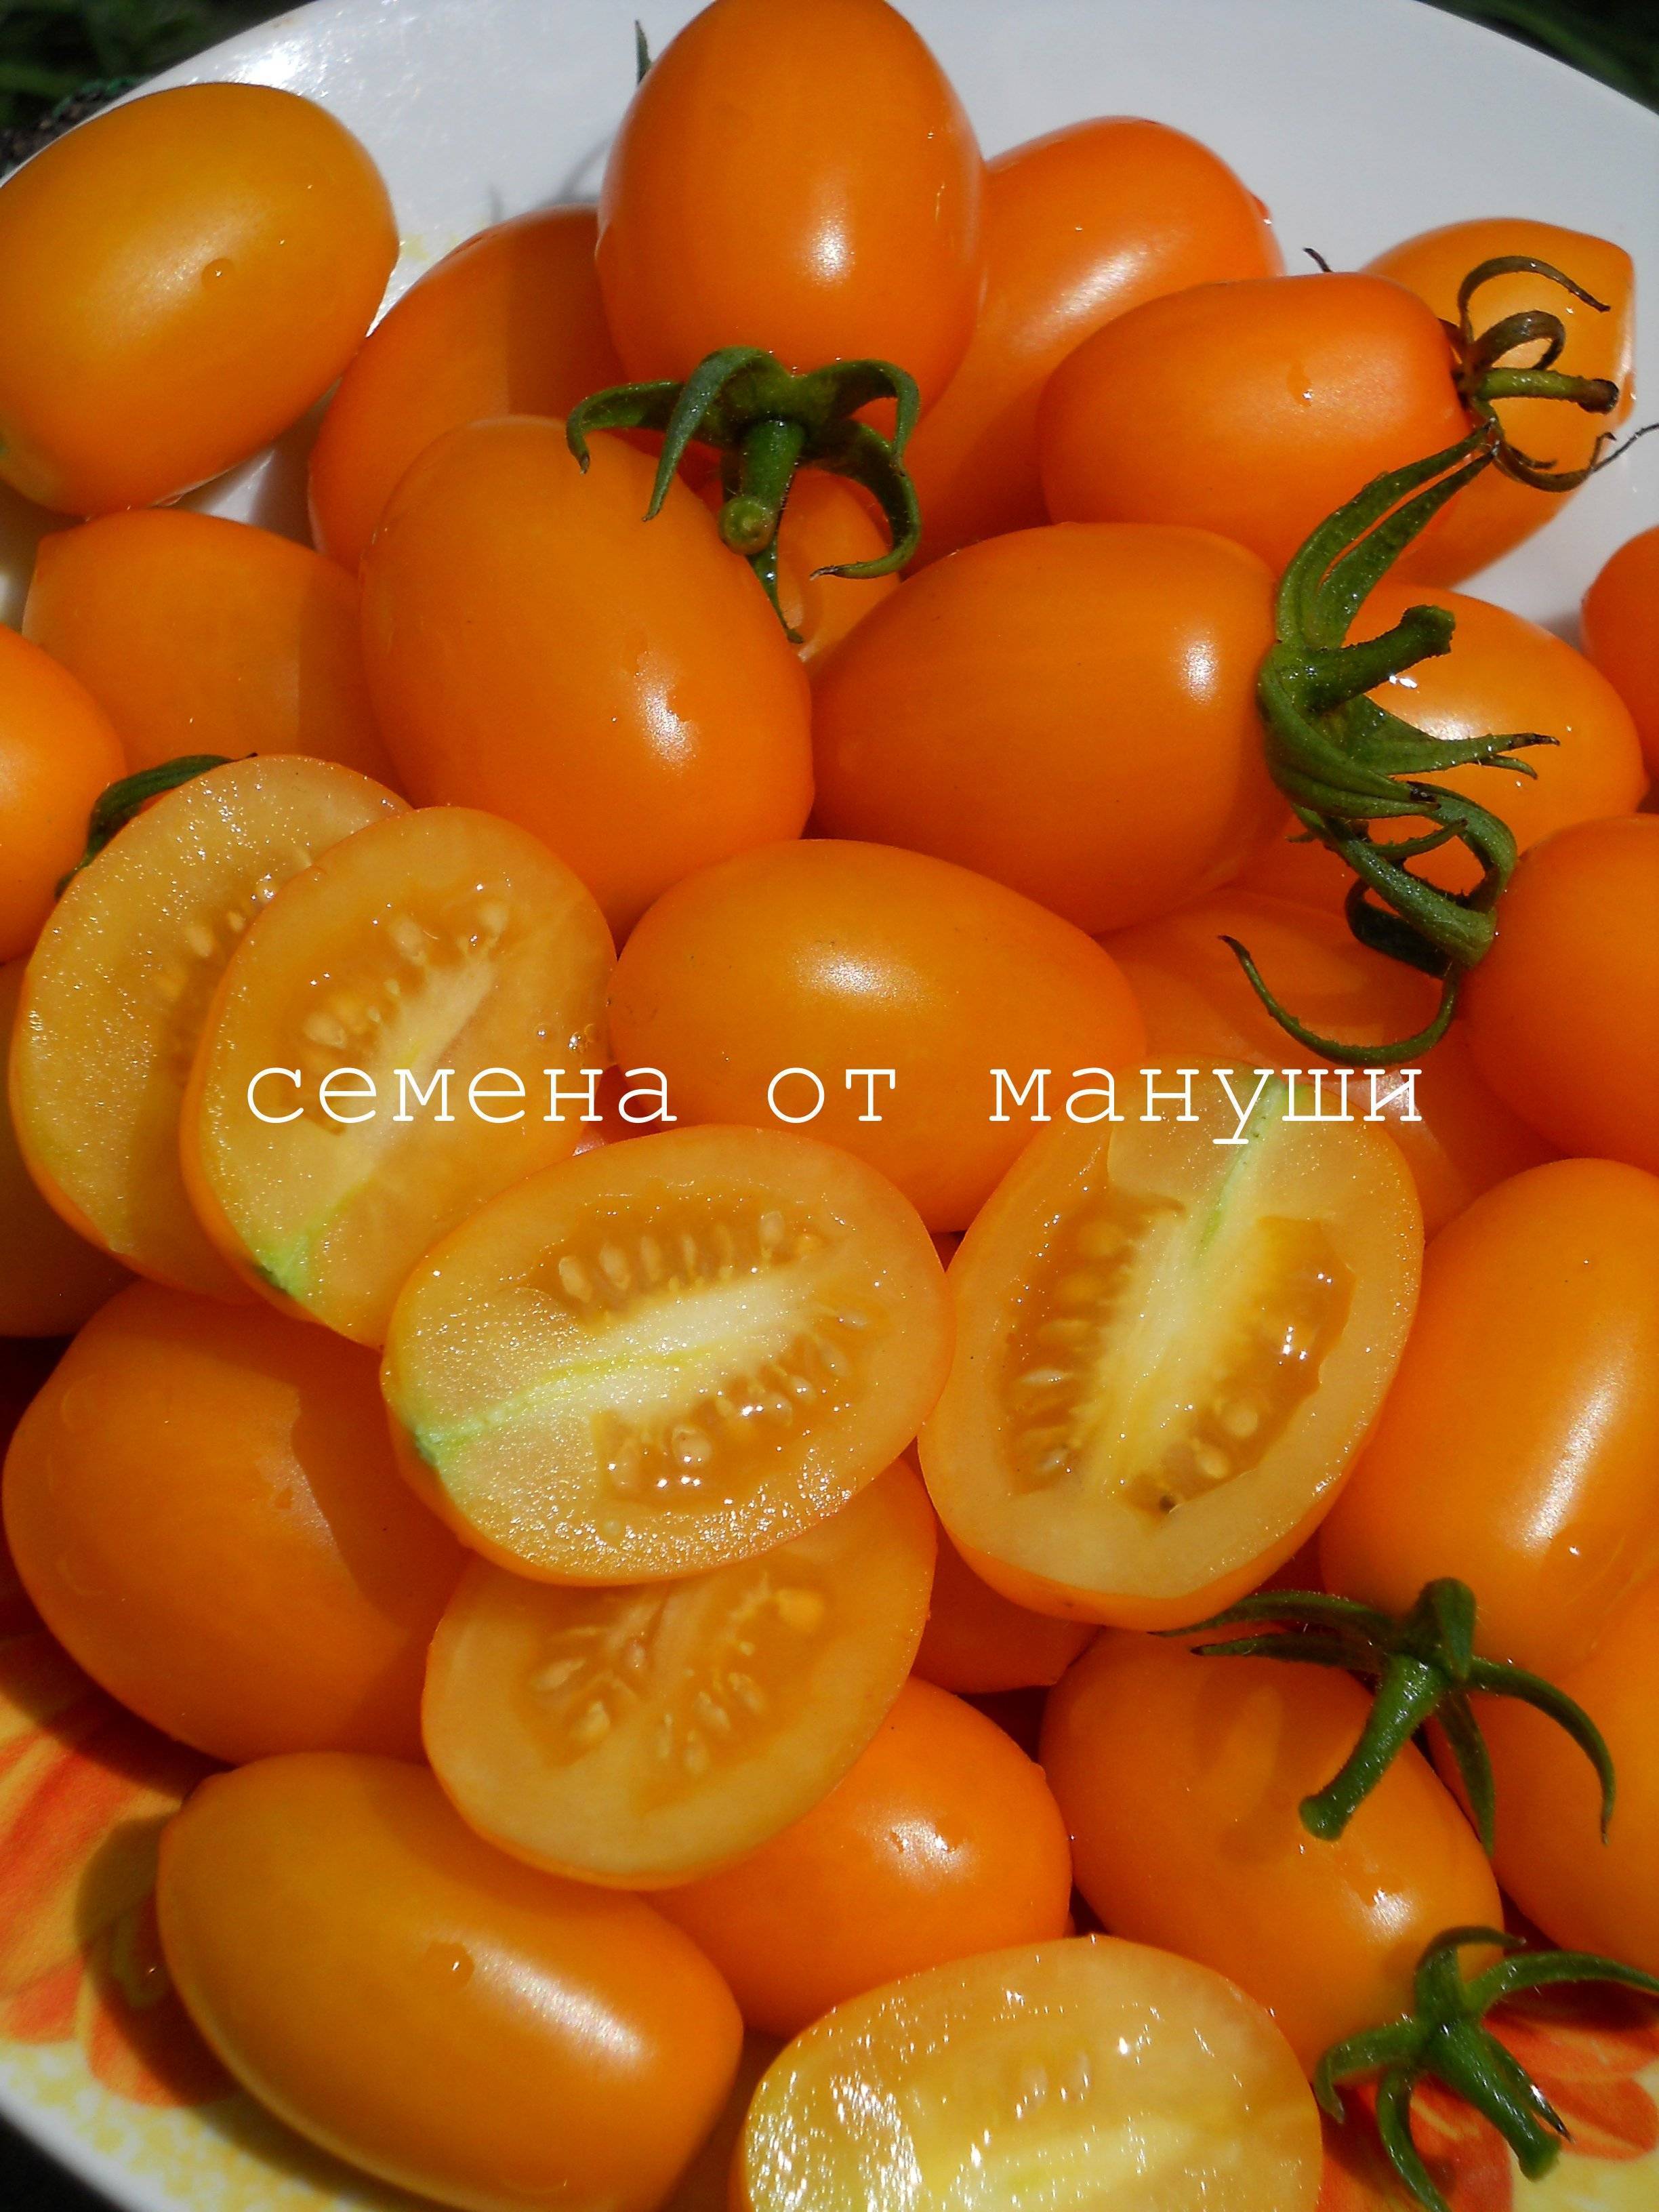 Сорта томатов финик. Семена томатами финики желтый. Томат финик желтый. Томат финик оранжевый. Черри финик оранжевый.